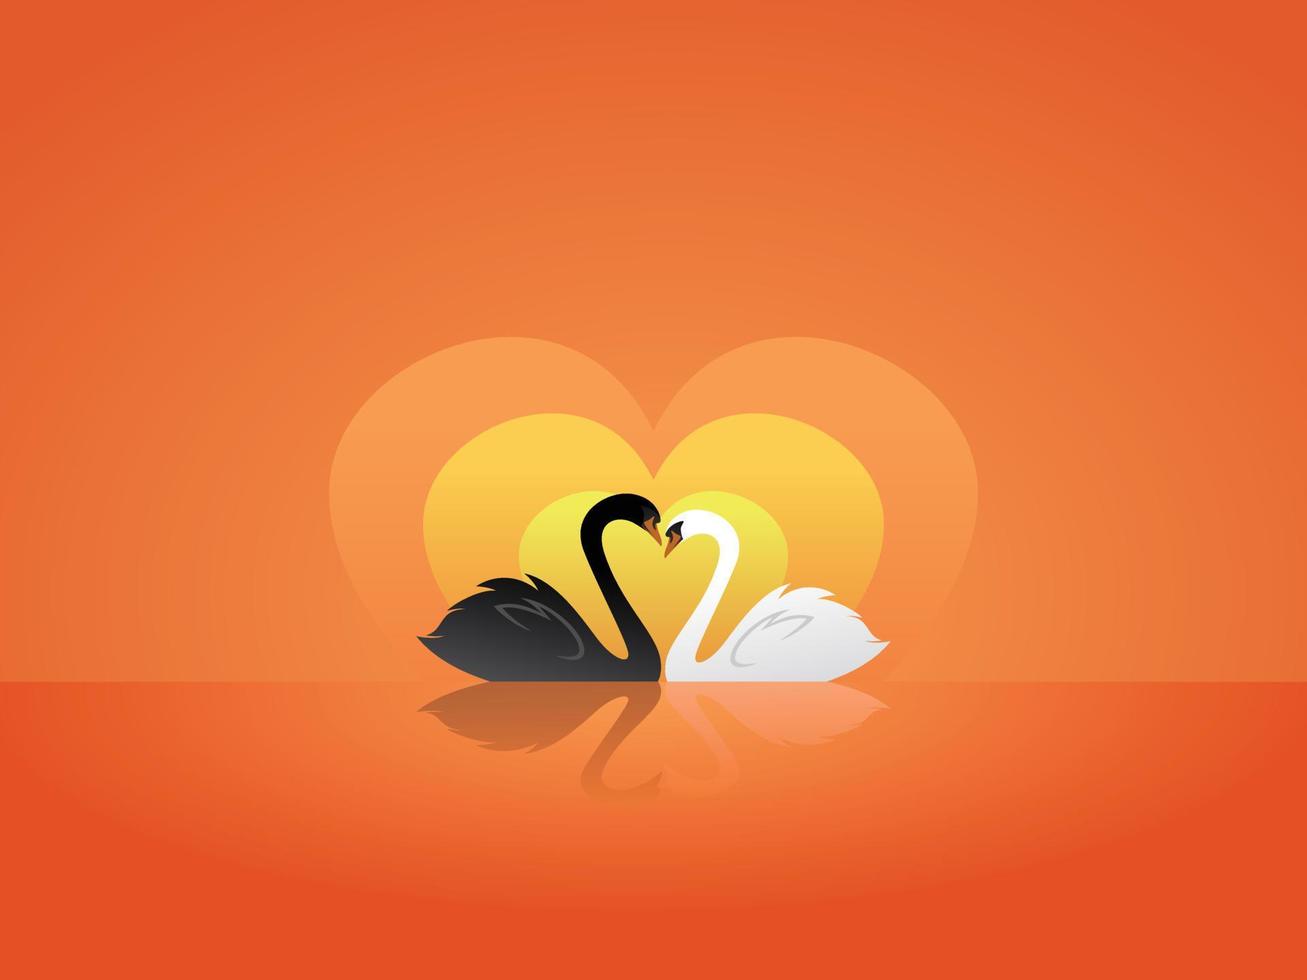 zwart en wit zwaan in liefde zonsondergang Valentijnsdag dag vector illustratie